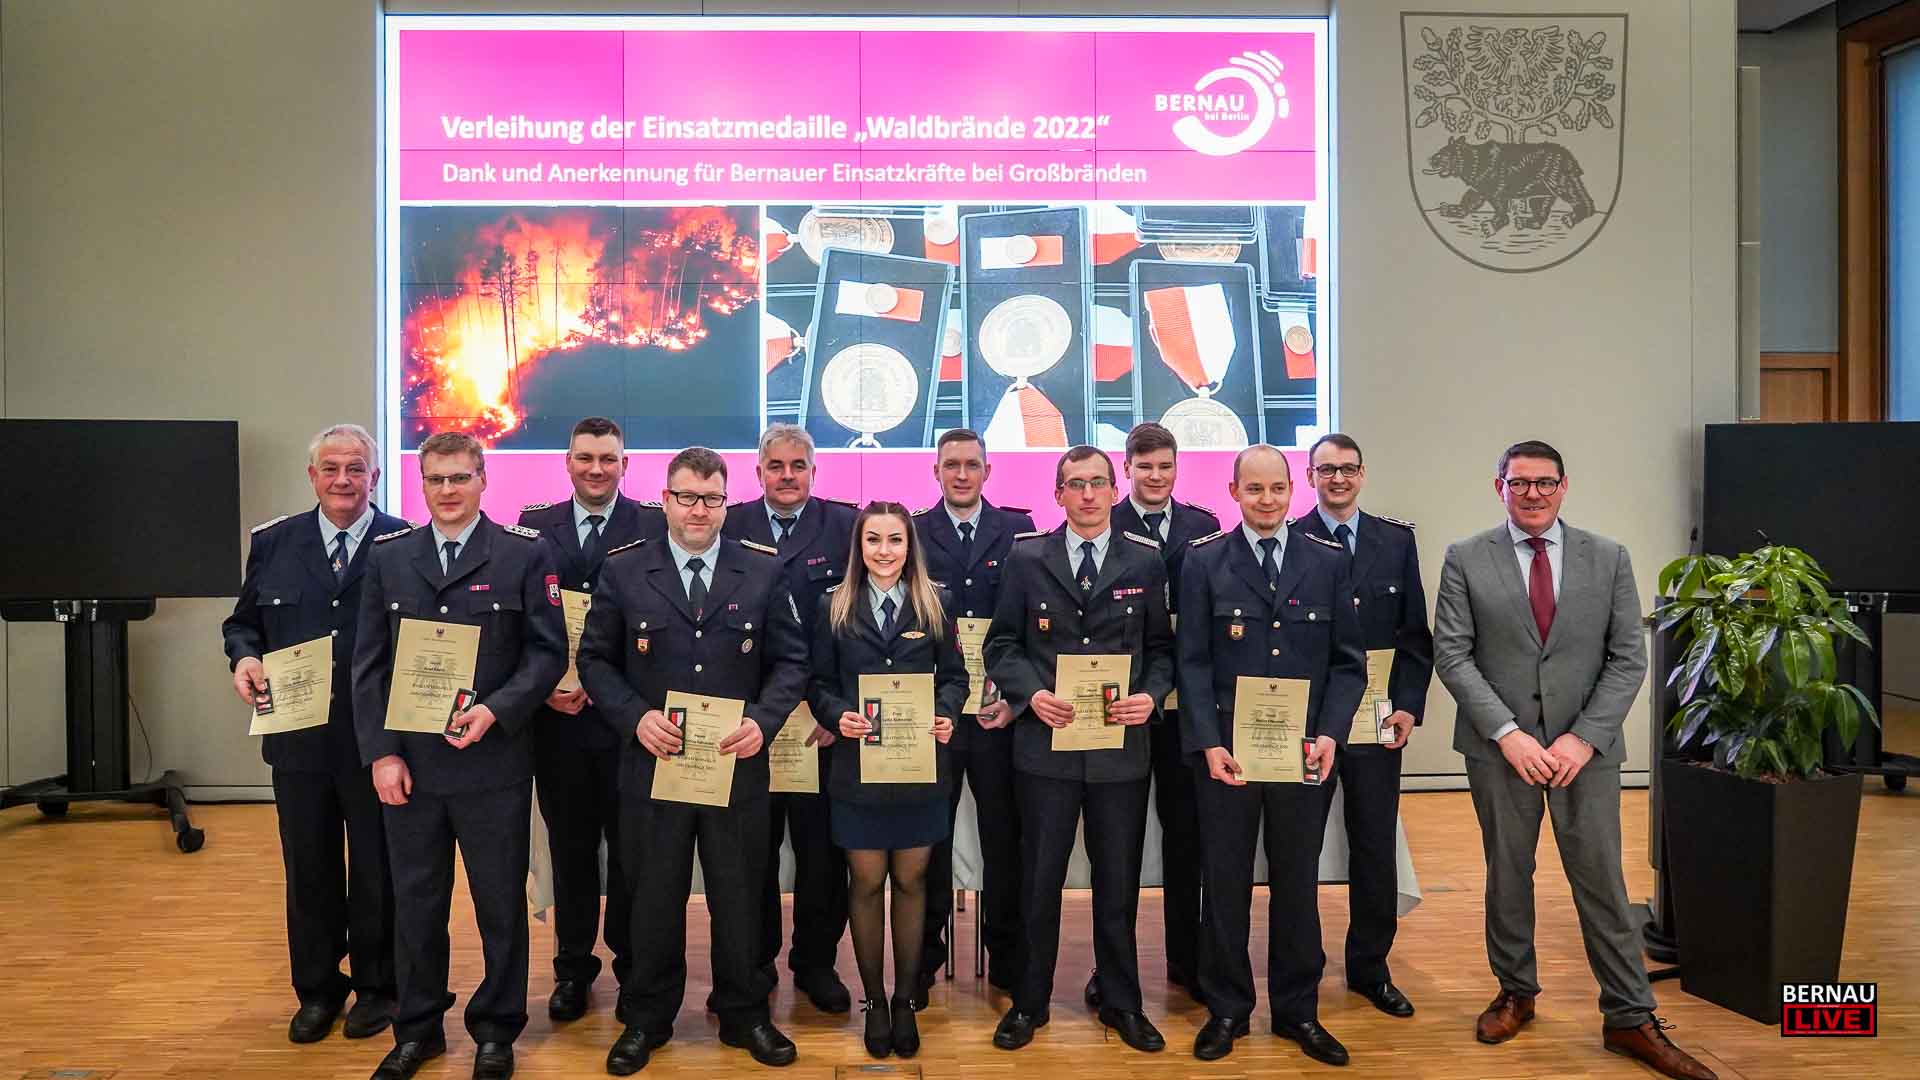 Feuerwehr Bernau: Auszeichnung mit der Einsatzmedaille "Waldbrände"